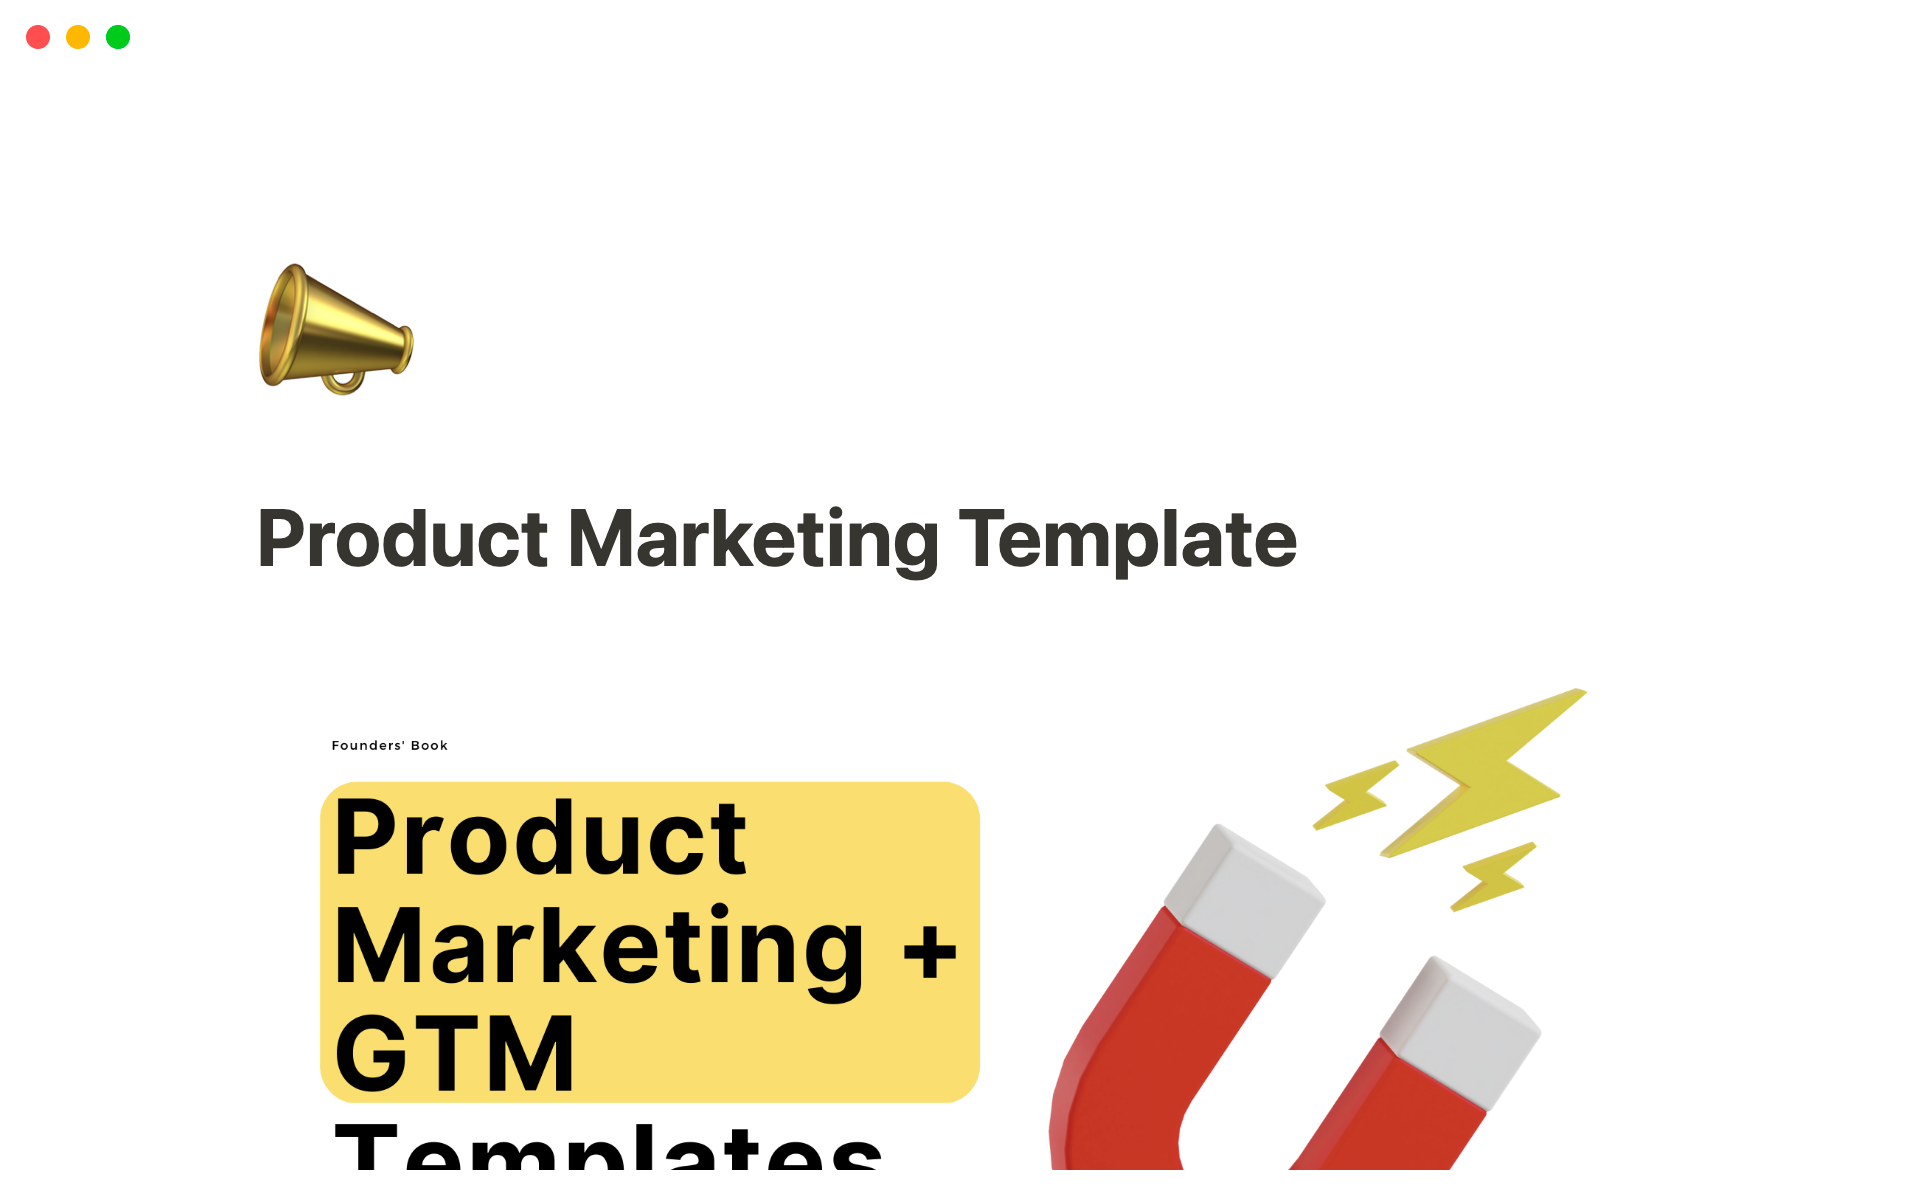 Uma prévia do modelo para Product Marketing + GTM Template